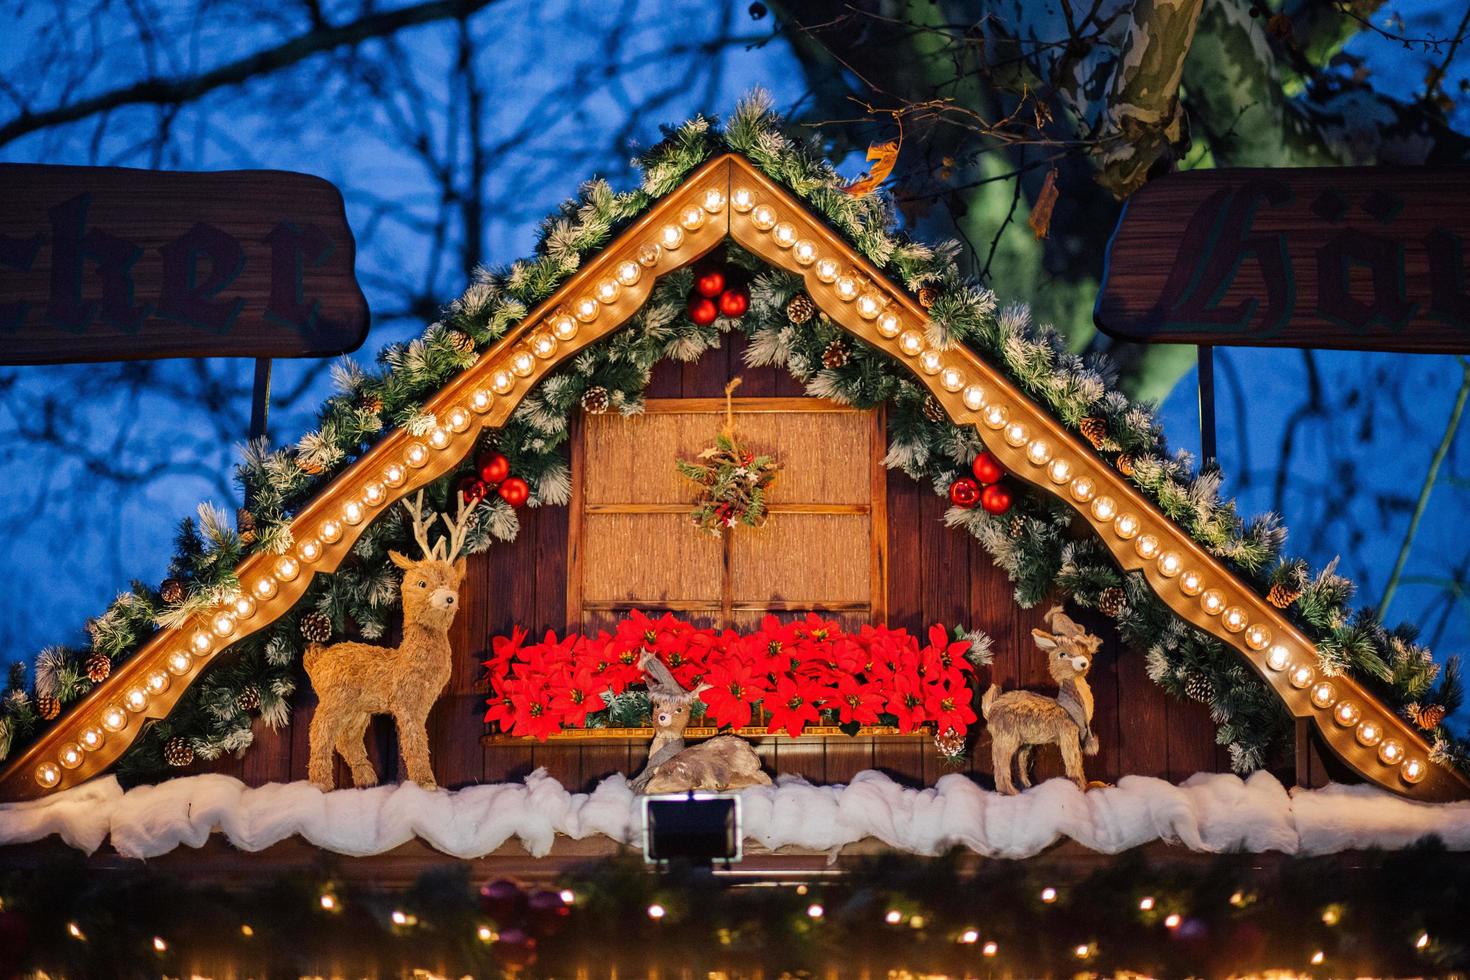 Baden Baden, Germania - dicembre 2017 - Natale mercato chalet decorazioni foto